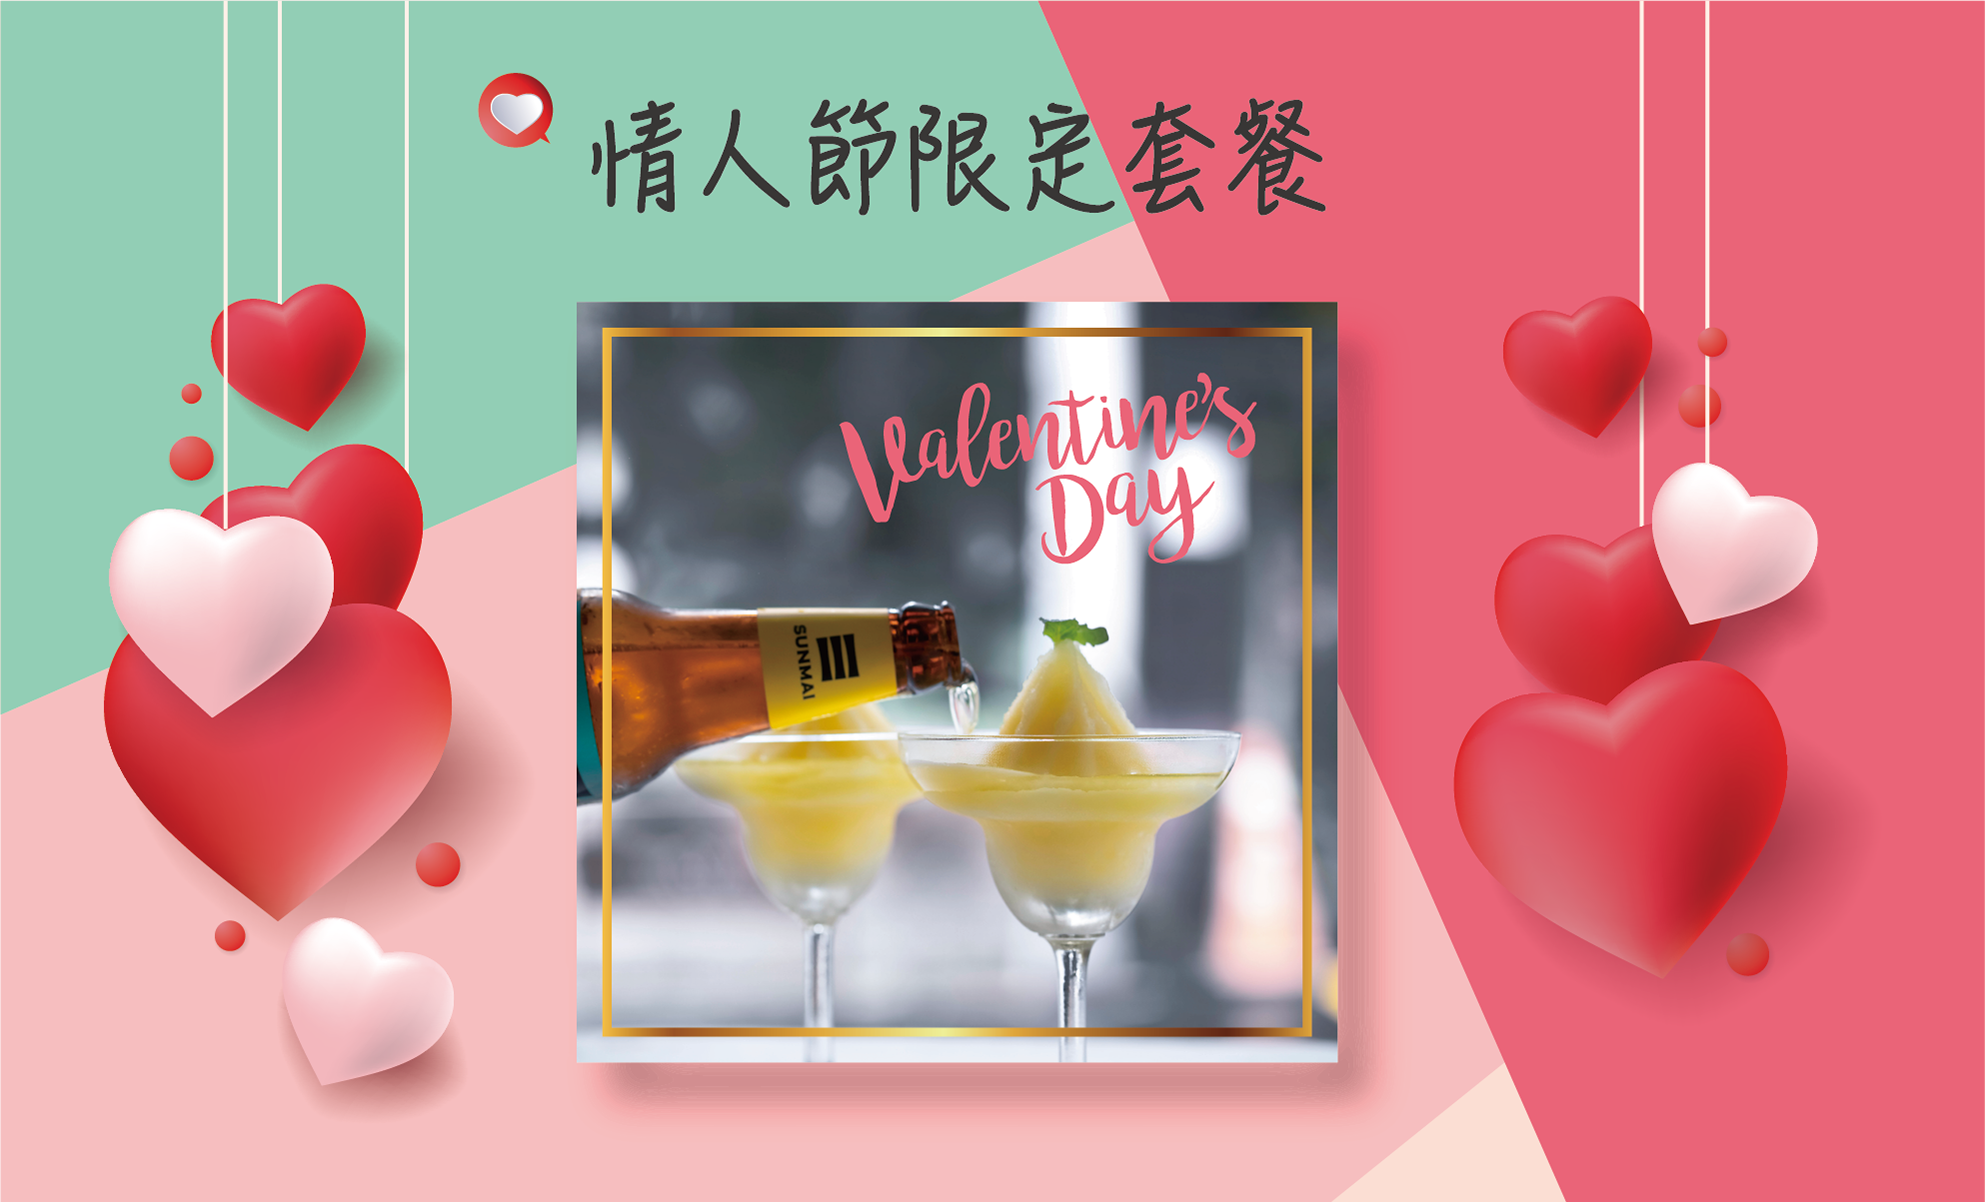 情人節套餐-valentines-day-2020-special-offer-meal-set